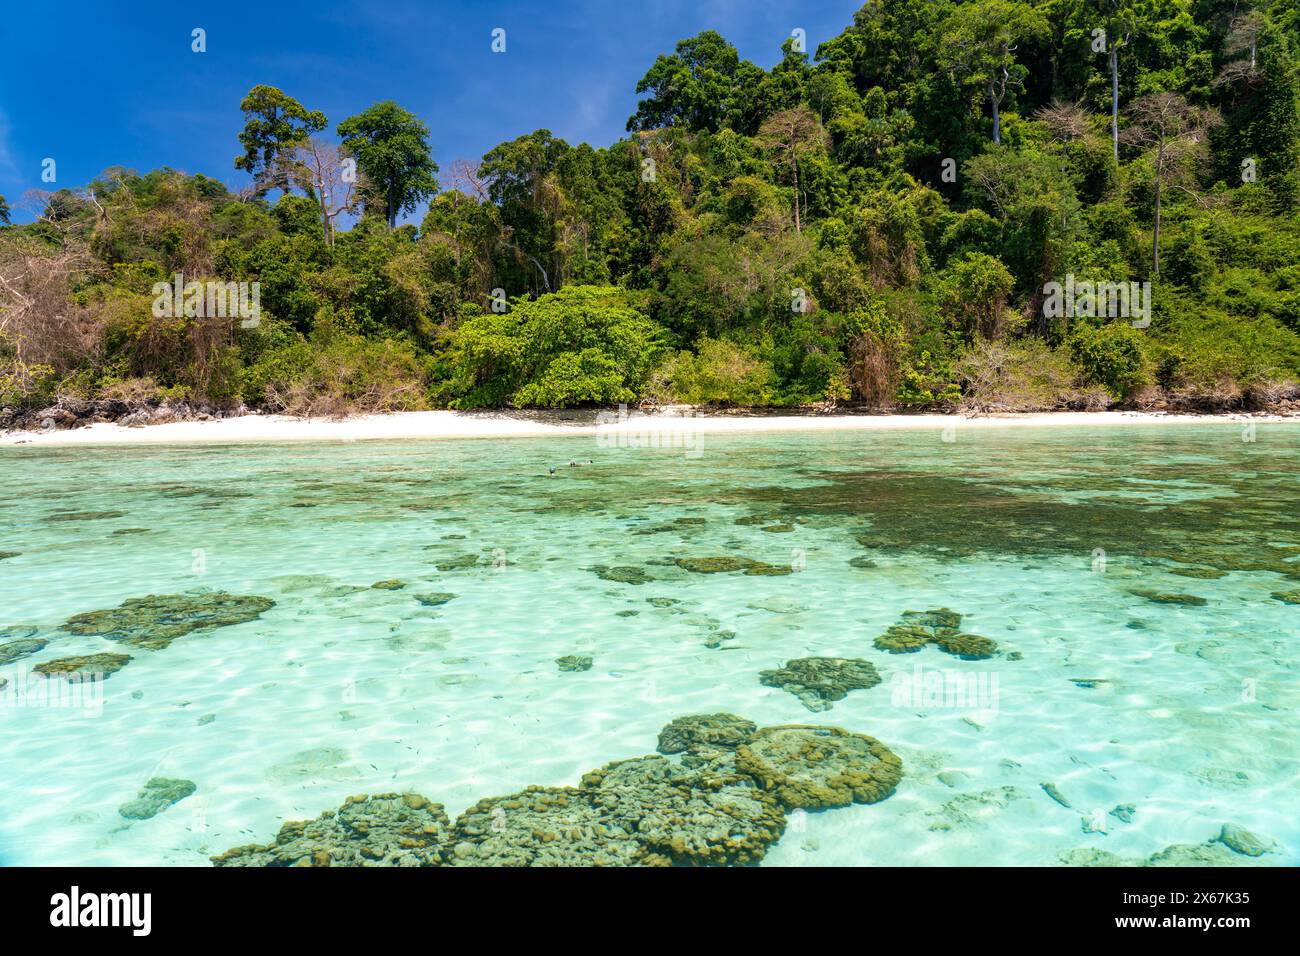 Korallenriff am Traumstrand von Ao-niang auf der Insel Koh Kradan in der Andamanensee, gewählt zum schönsten Strand der Welt im Jahr 2023, Thailand, Asien Stockfoto